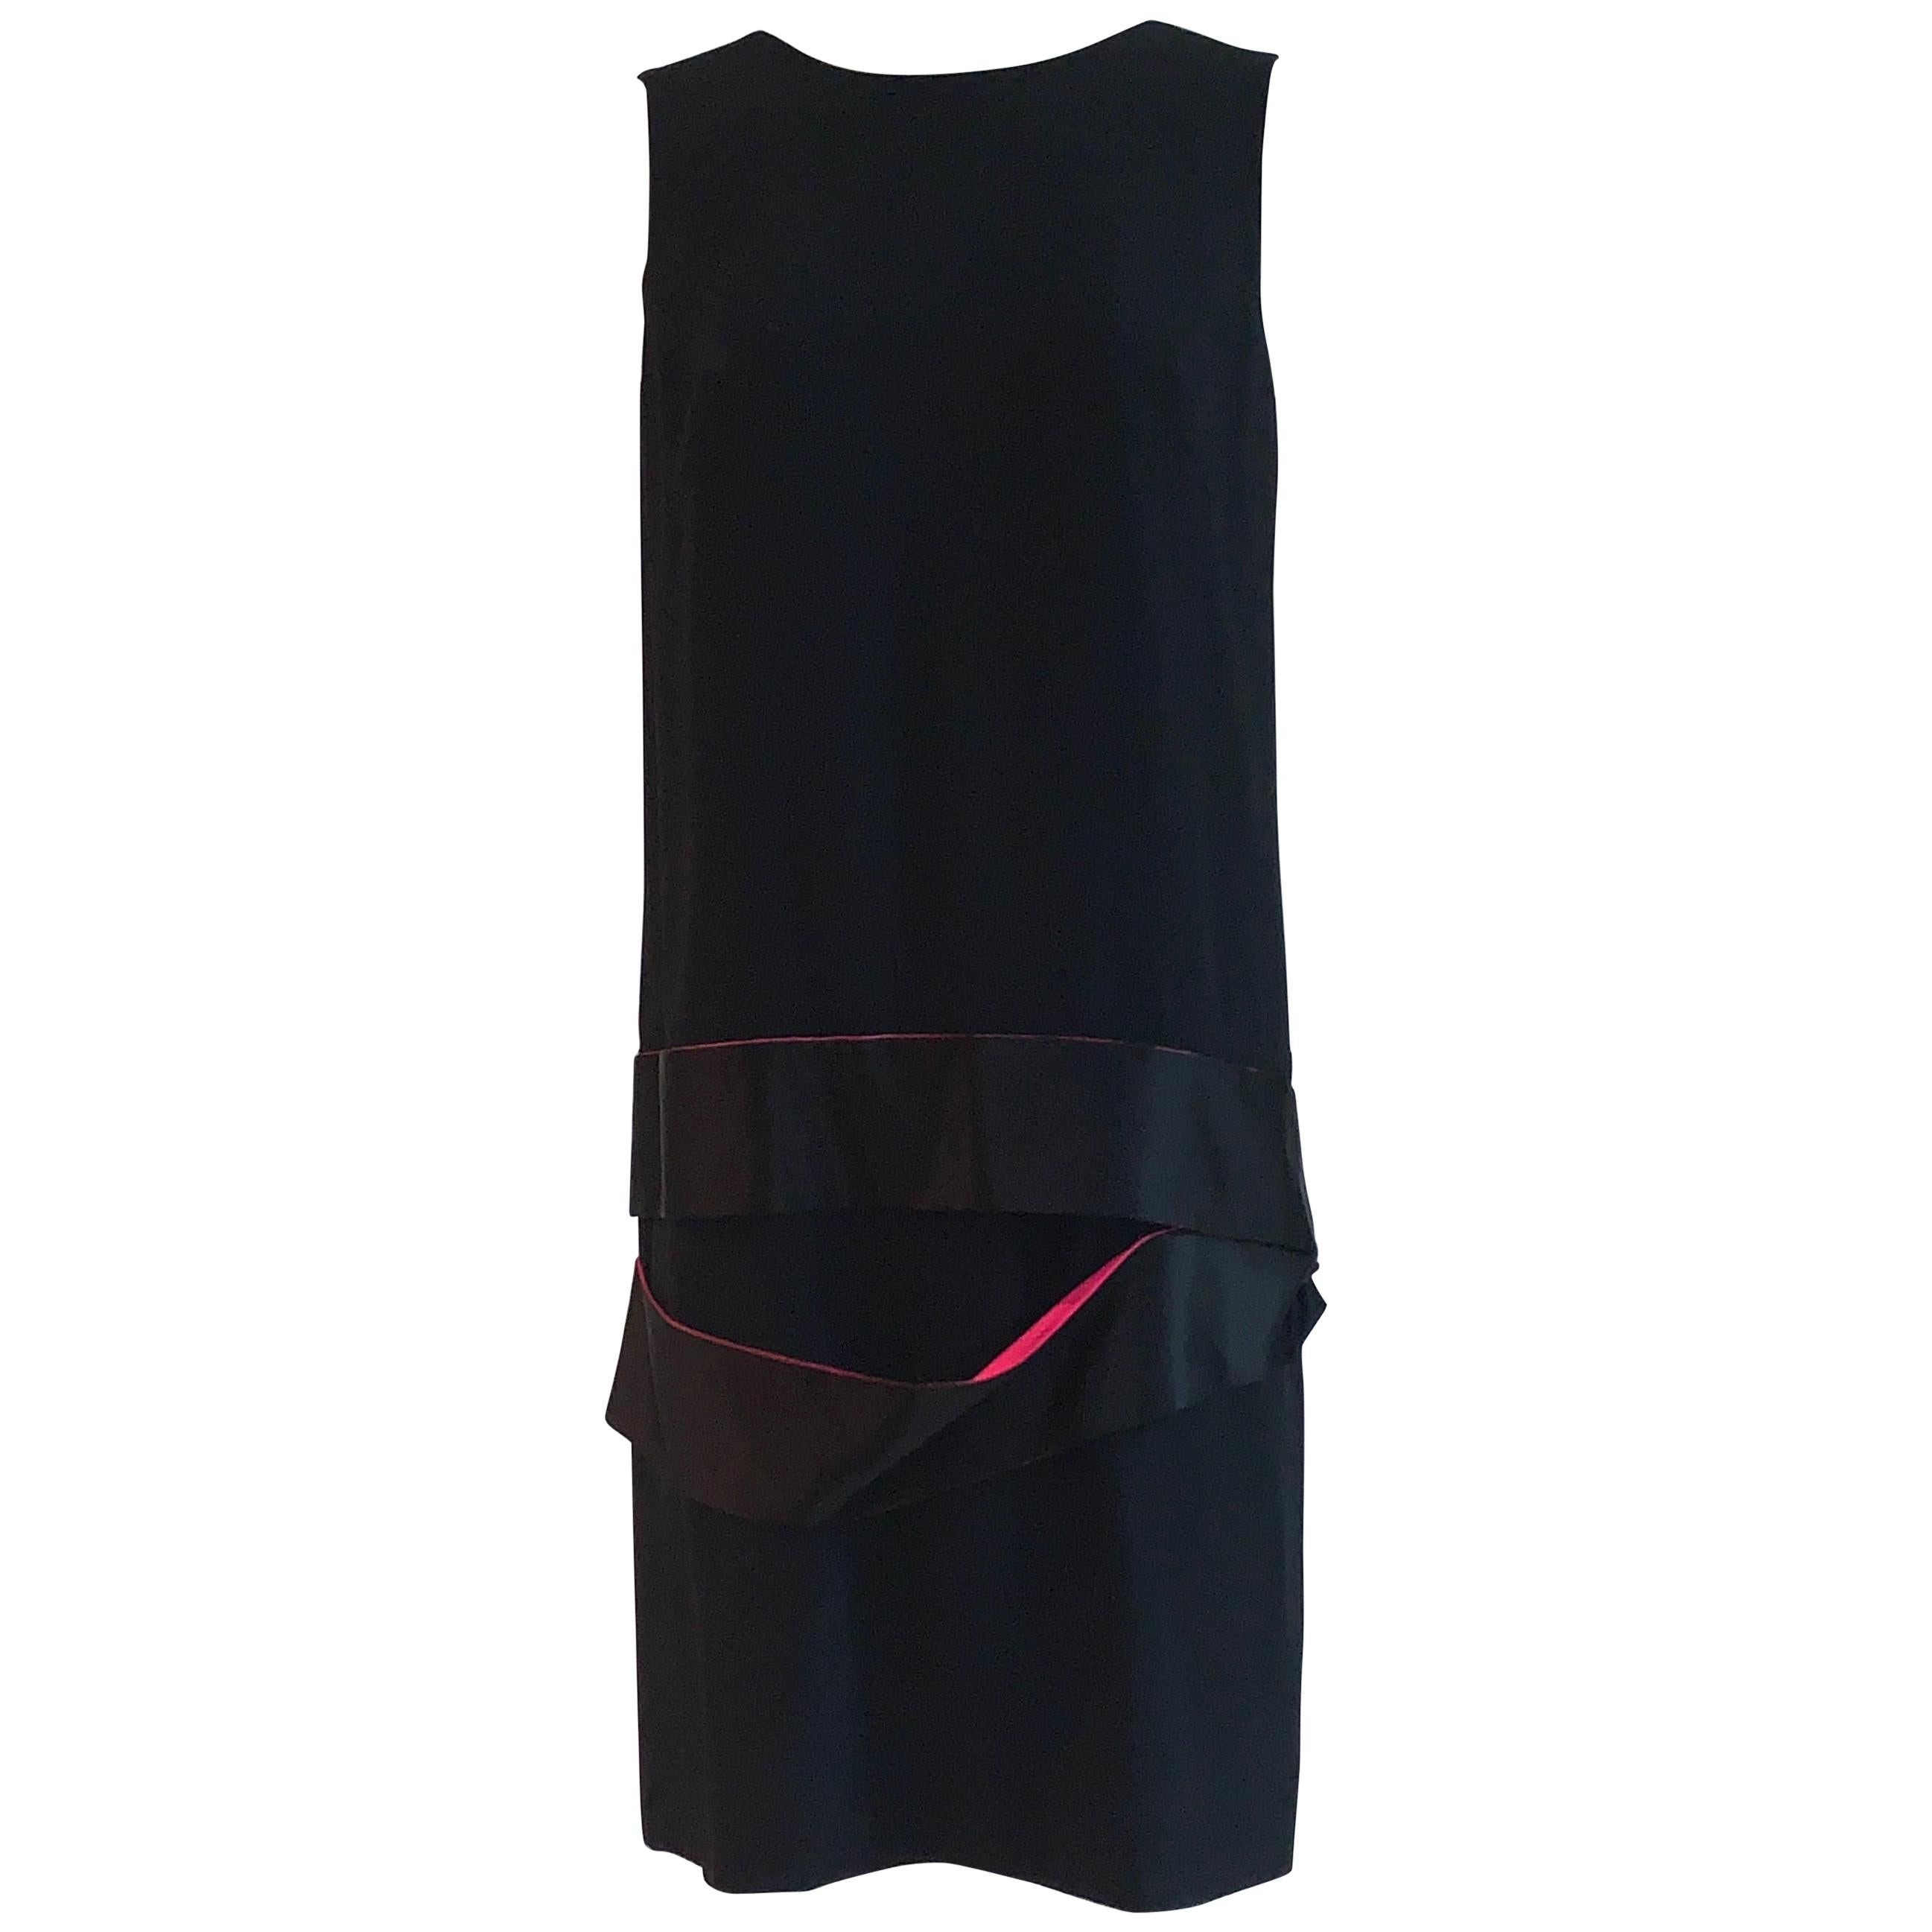 Alexander McQueen 2008 Black Drop Waist Dress with Pink Silk Band Detail For Sale